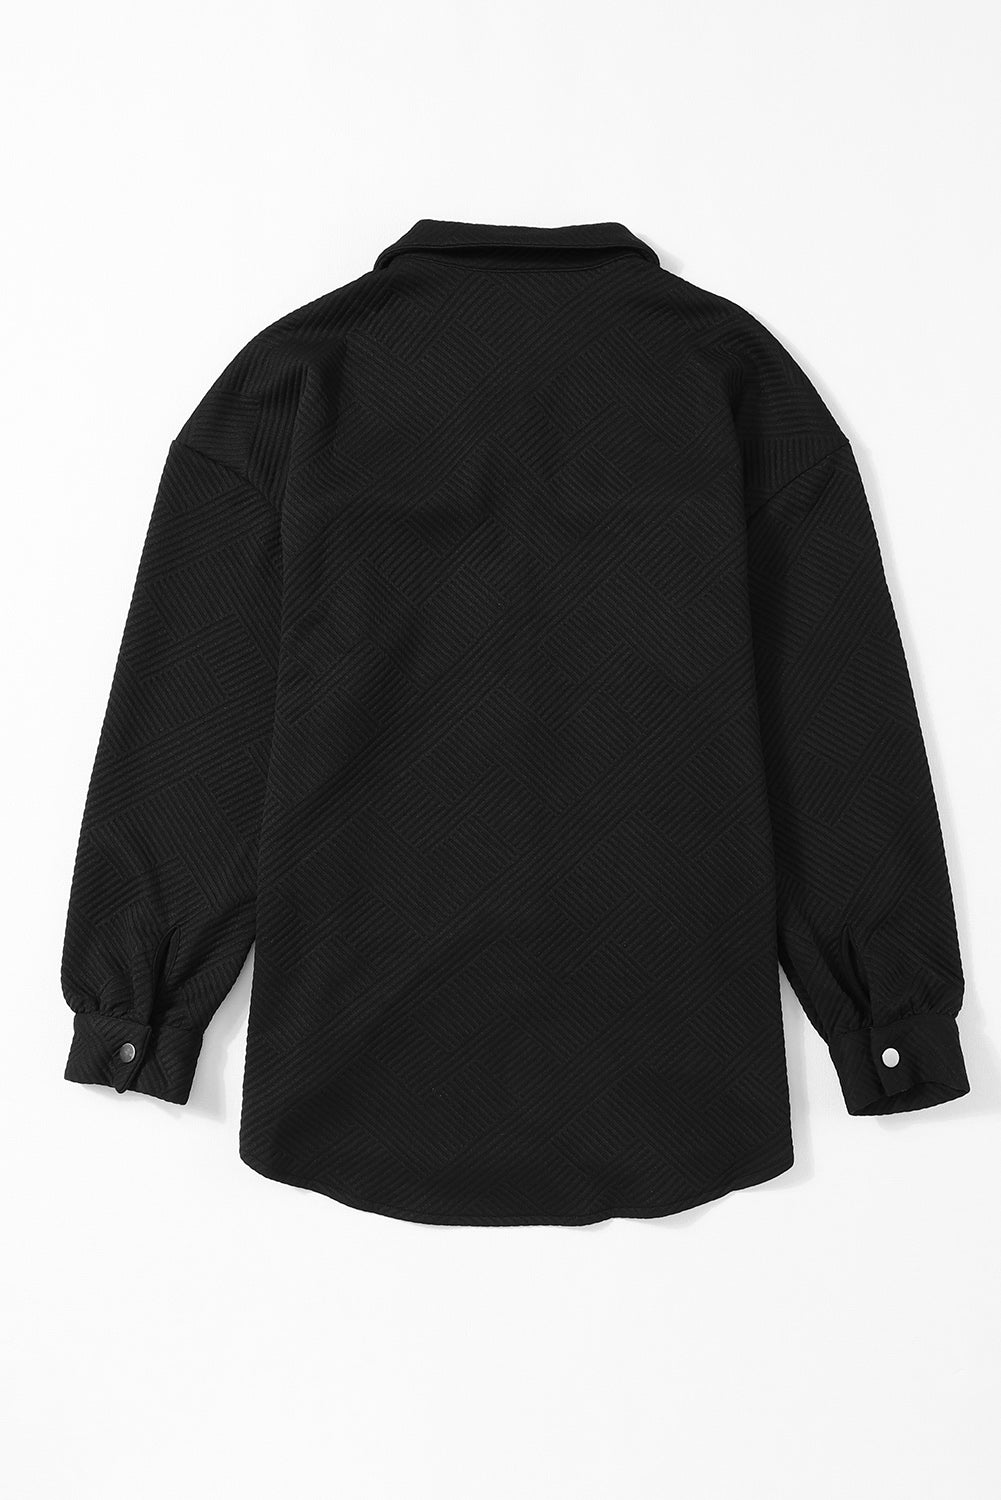 Schwarze, einfarbige, strukturierte, geknöpfte Hemdjacke mit Pattentasche